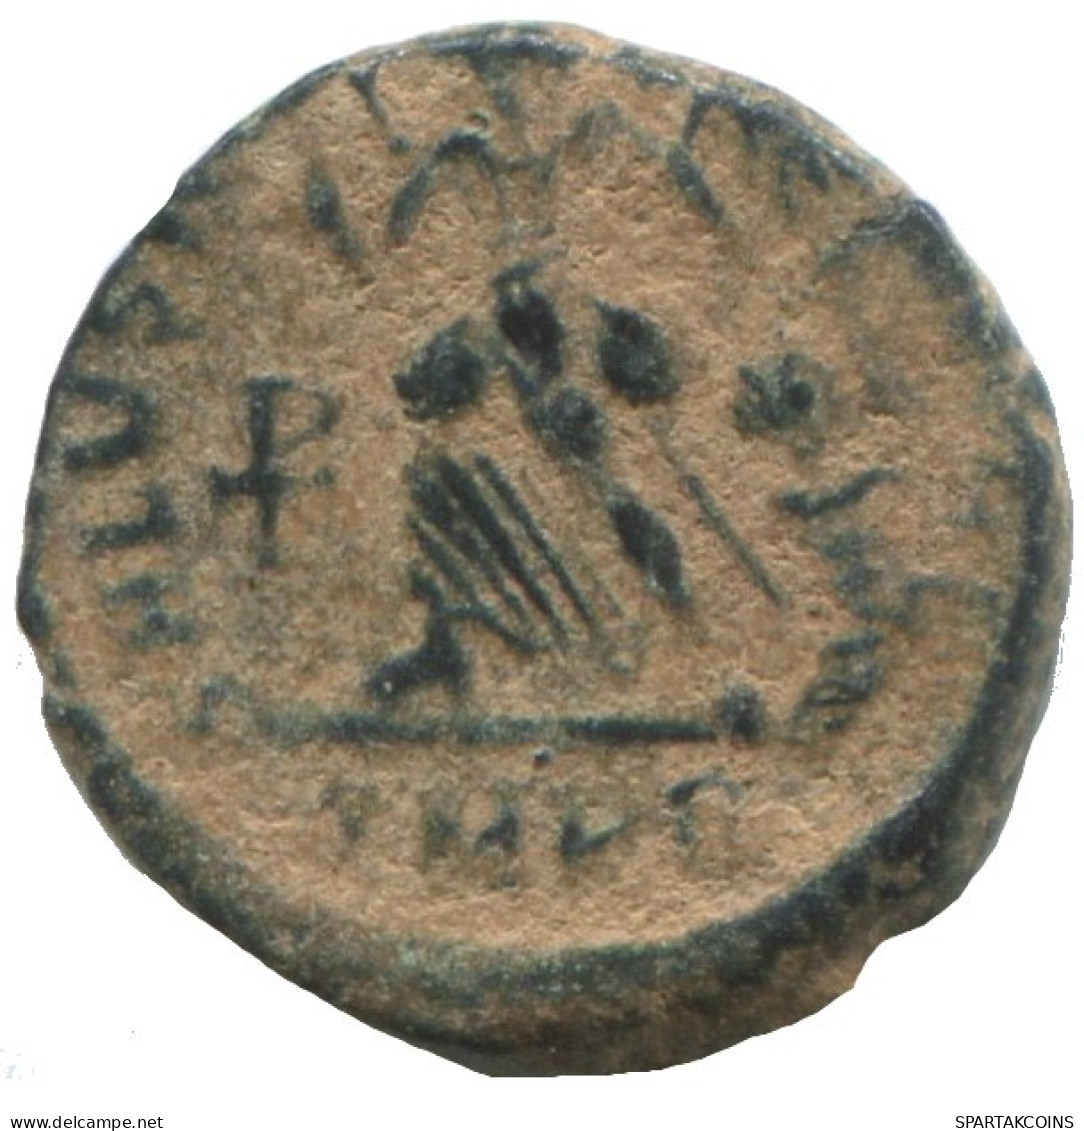 VALENTINIAN II ANTIOCH ANA AD375-392 SALVS REI-PVBLICAE 1.1g/12mm #ANN1386.9.D.A - Der Spätrömanischen Reich (363 / 476)